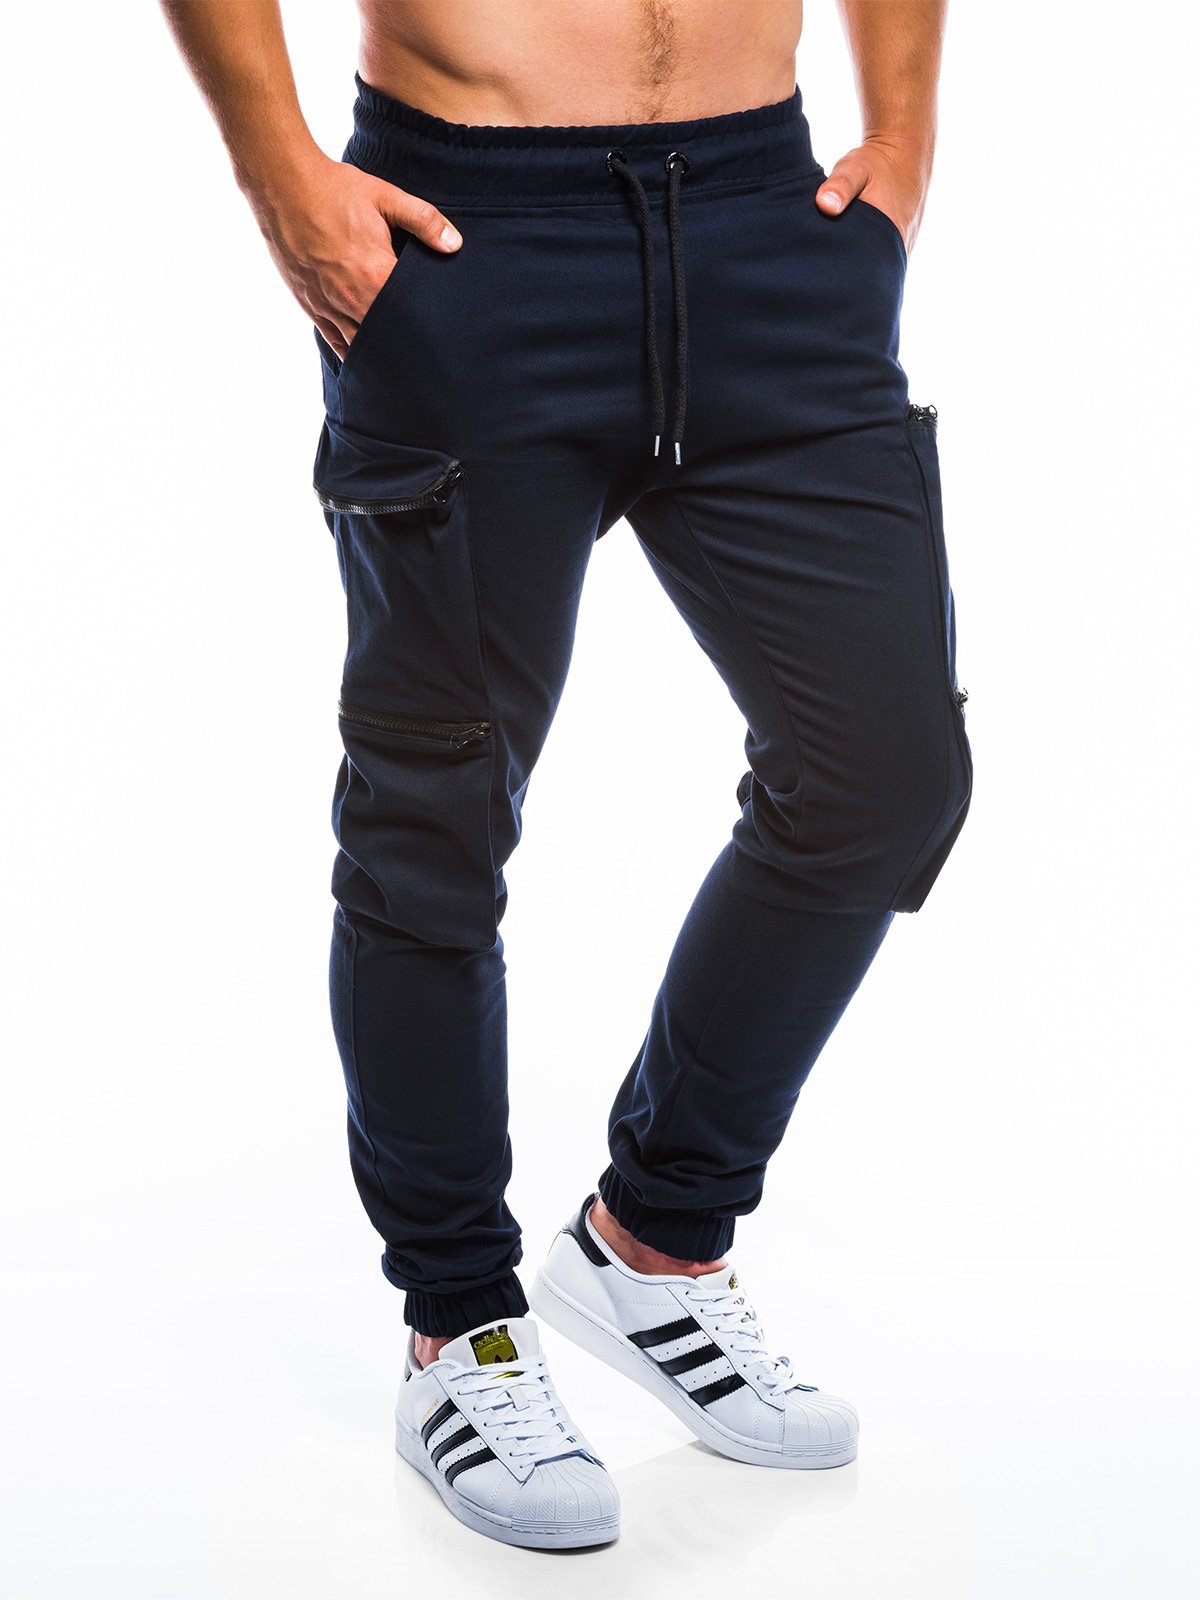 Men's pants joggers P706 - navy | MODONE wholesale - Clothing For Men